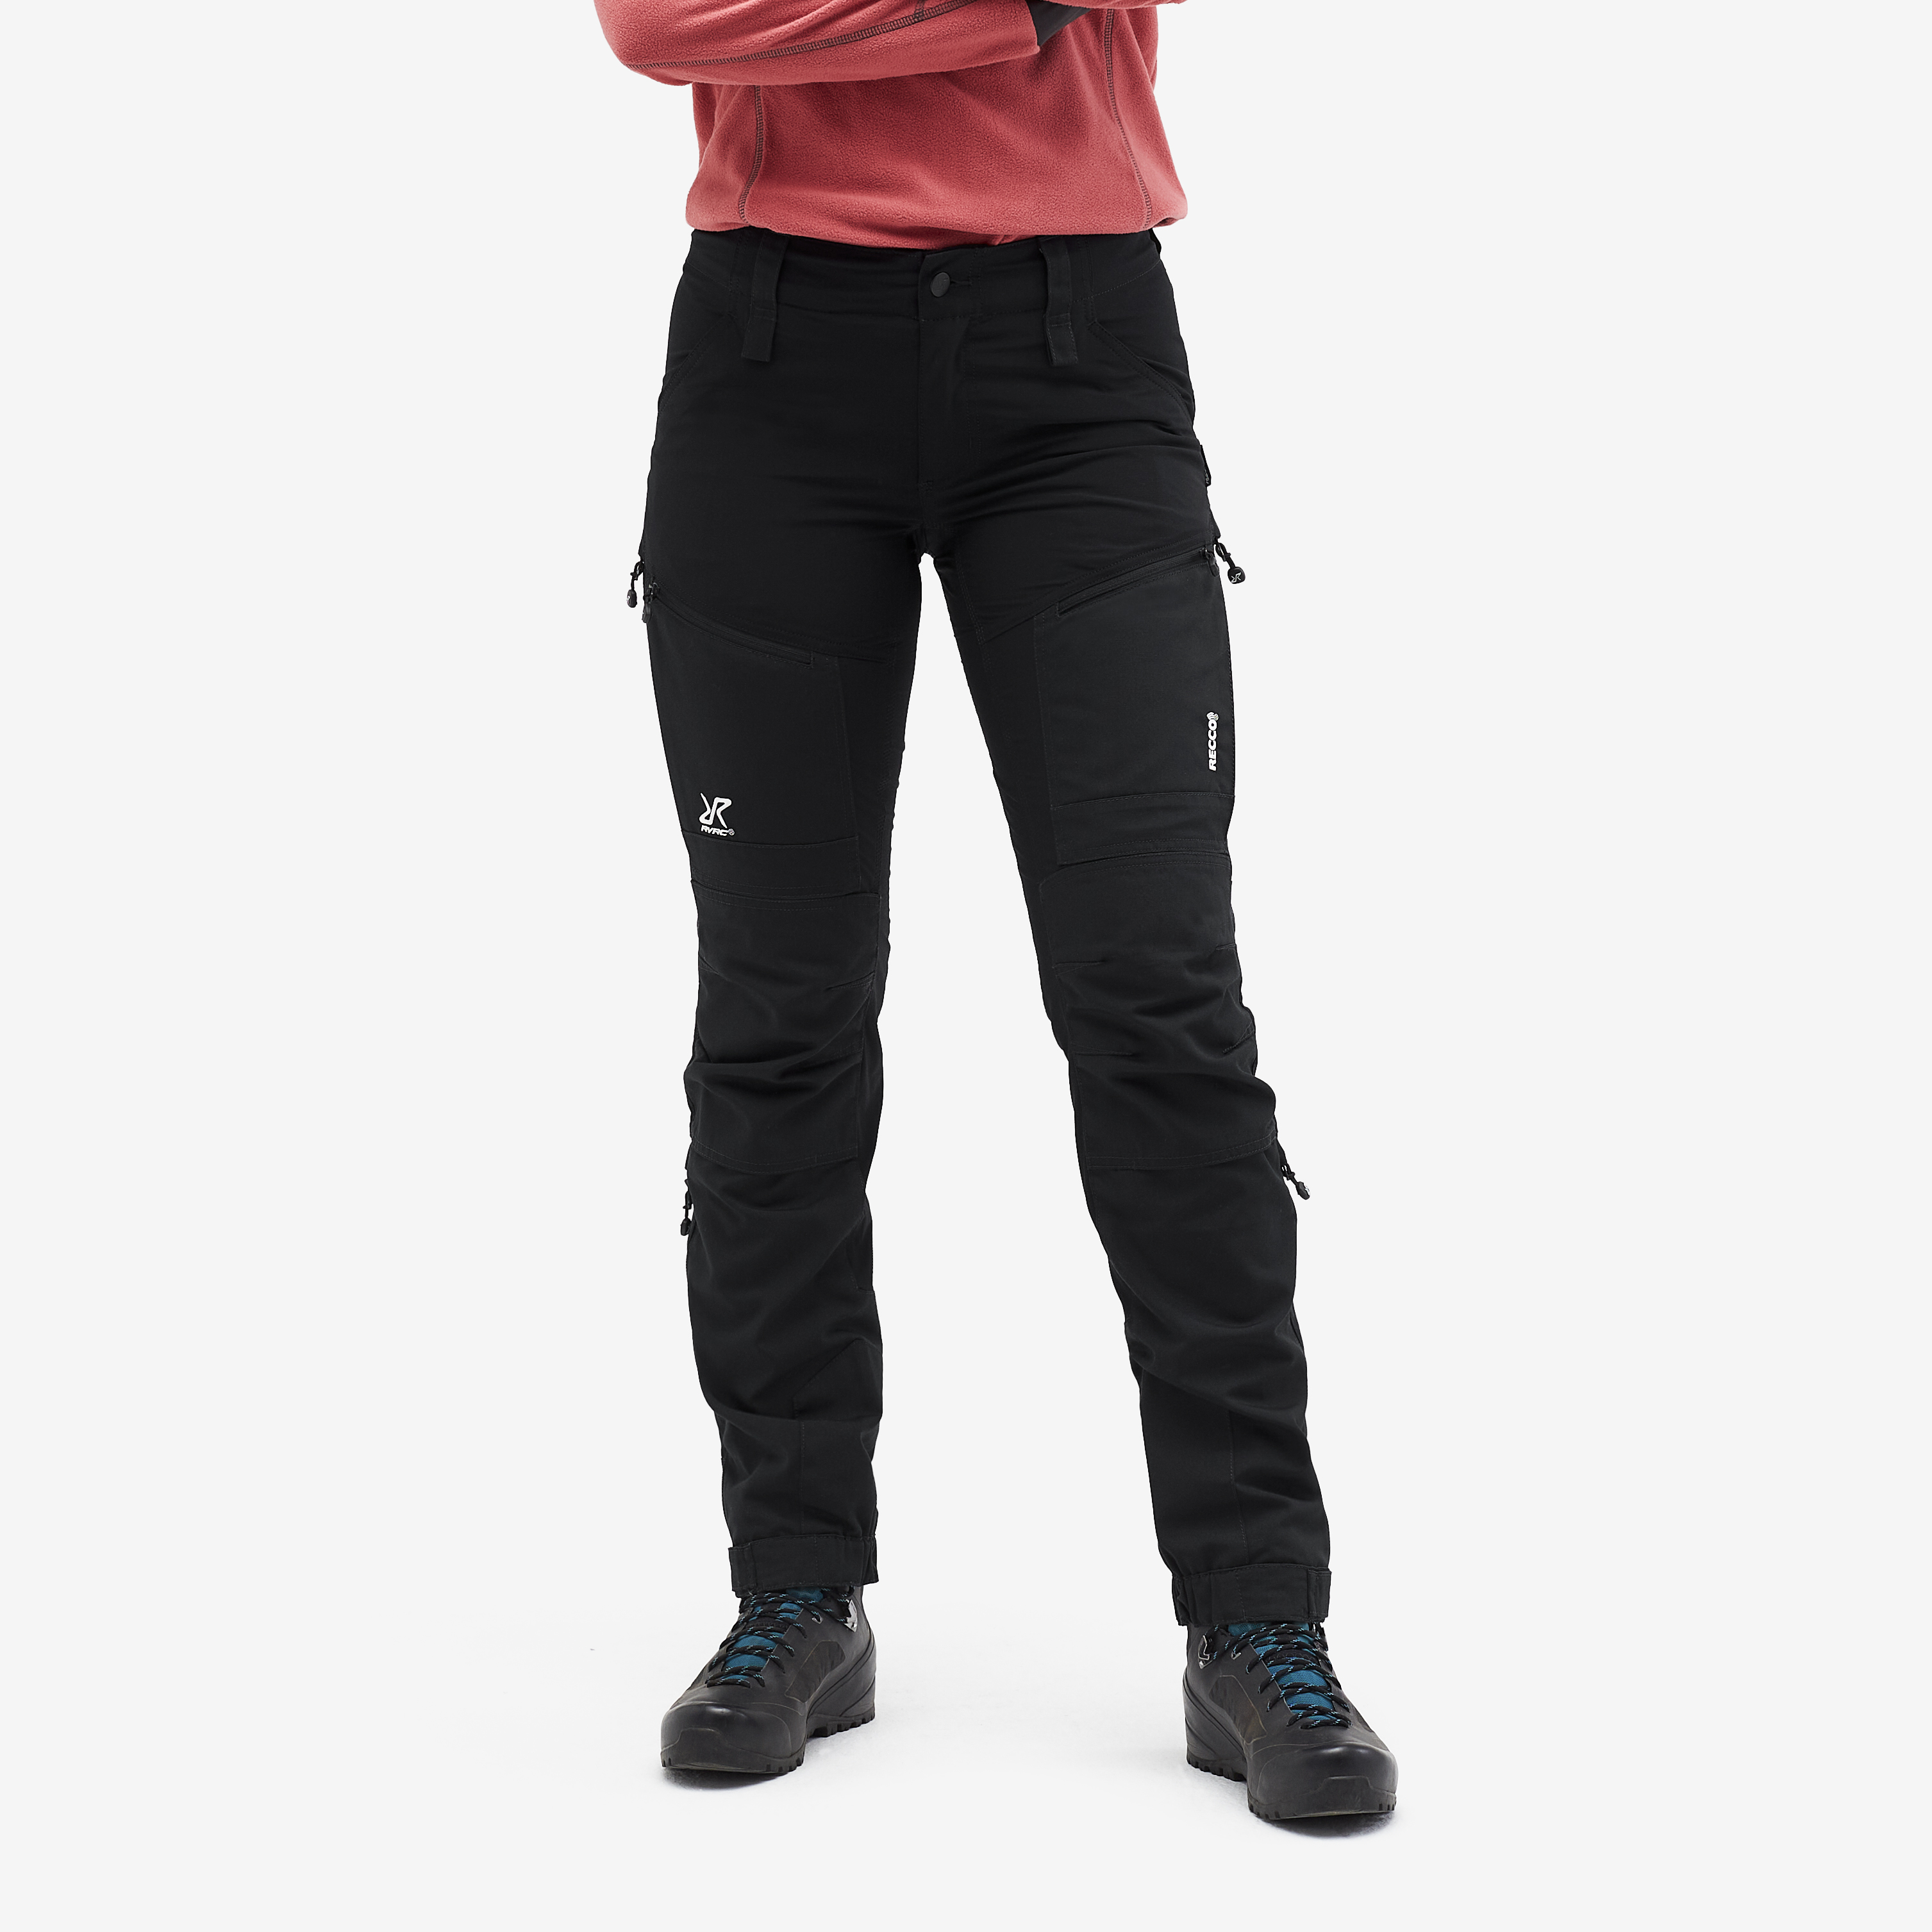 Nordwand outdoor bukser for kvinder i sort